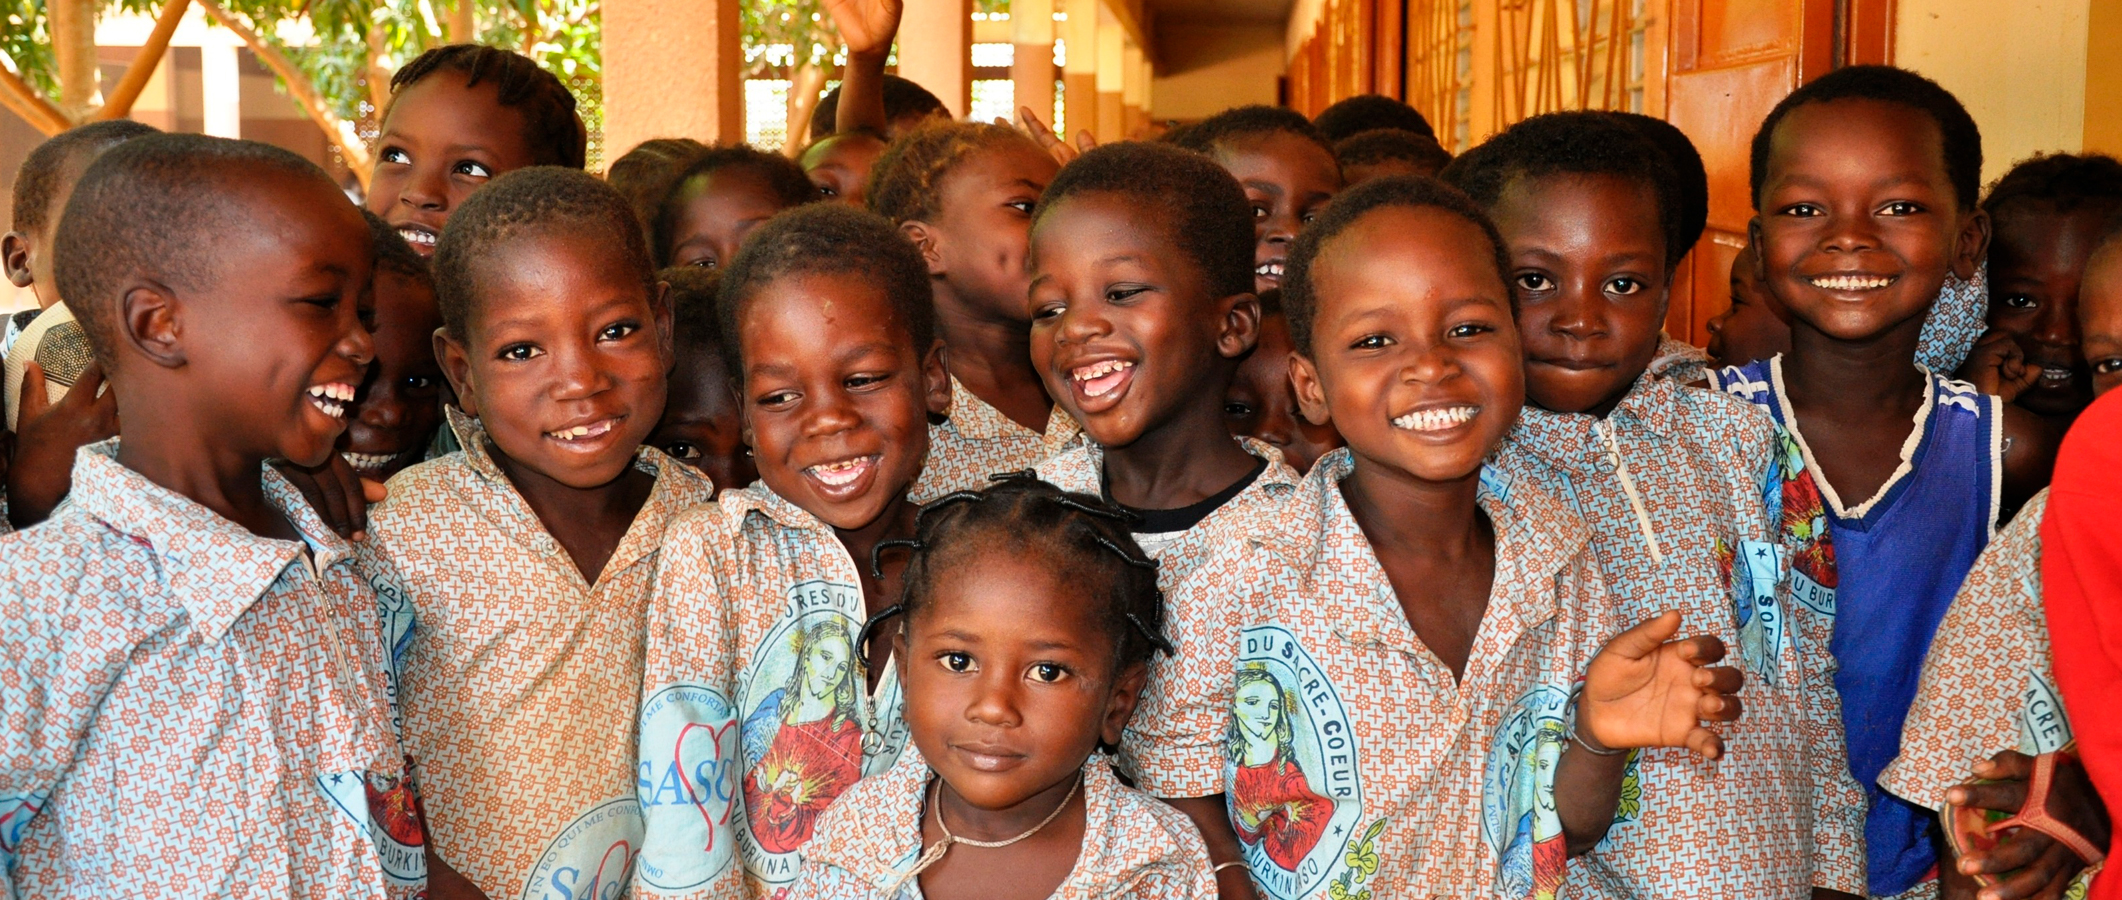 Photographie de Jeunes enfants africains en uniforme scolaire